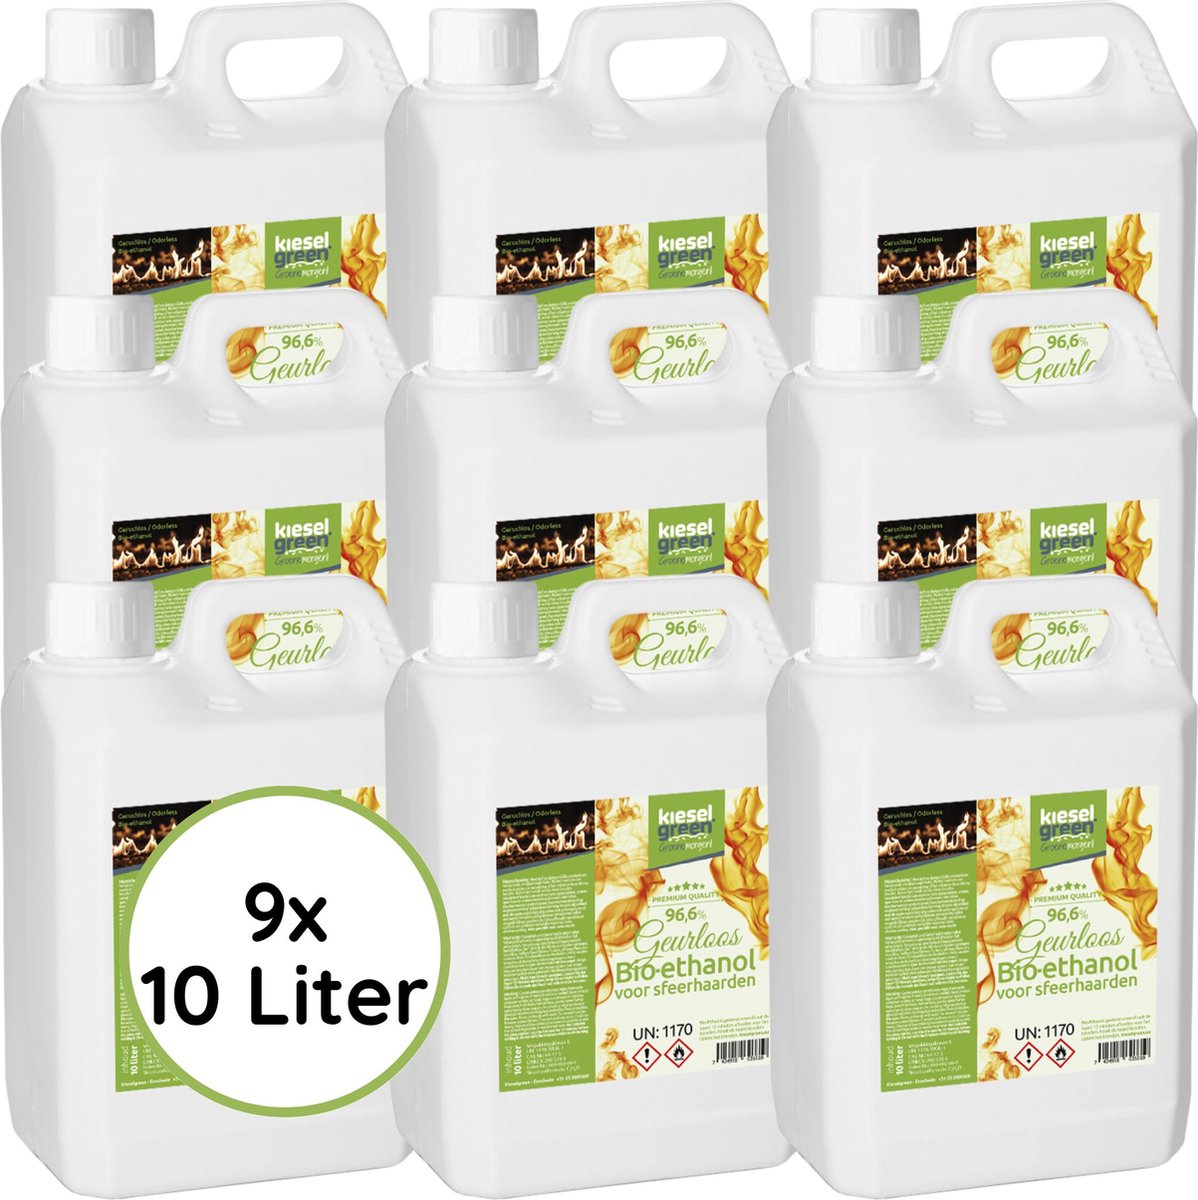 KieselGreen 90 Liter Bio-Ethanol Geurloos - Bioethanol 96.6%, Veilig voor Sfeerhaarden en Tafelhaarden, Milieuvriendelijk - Premium Kwaliteit Ethanol voor Binnen en Buiten